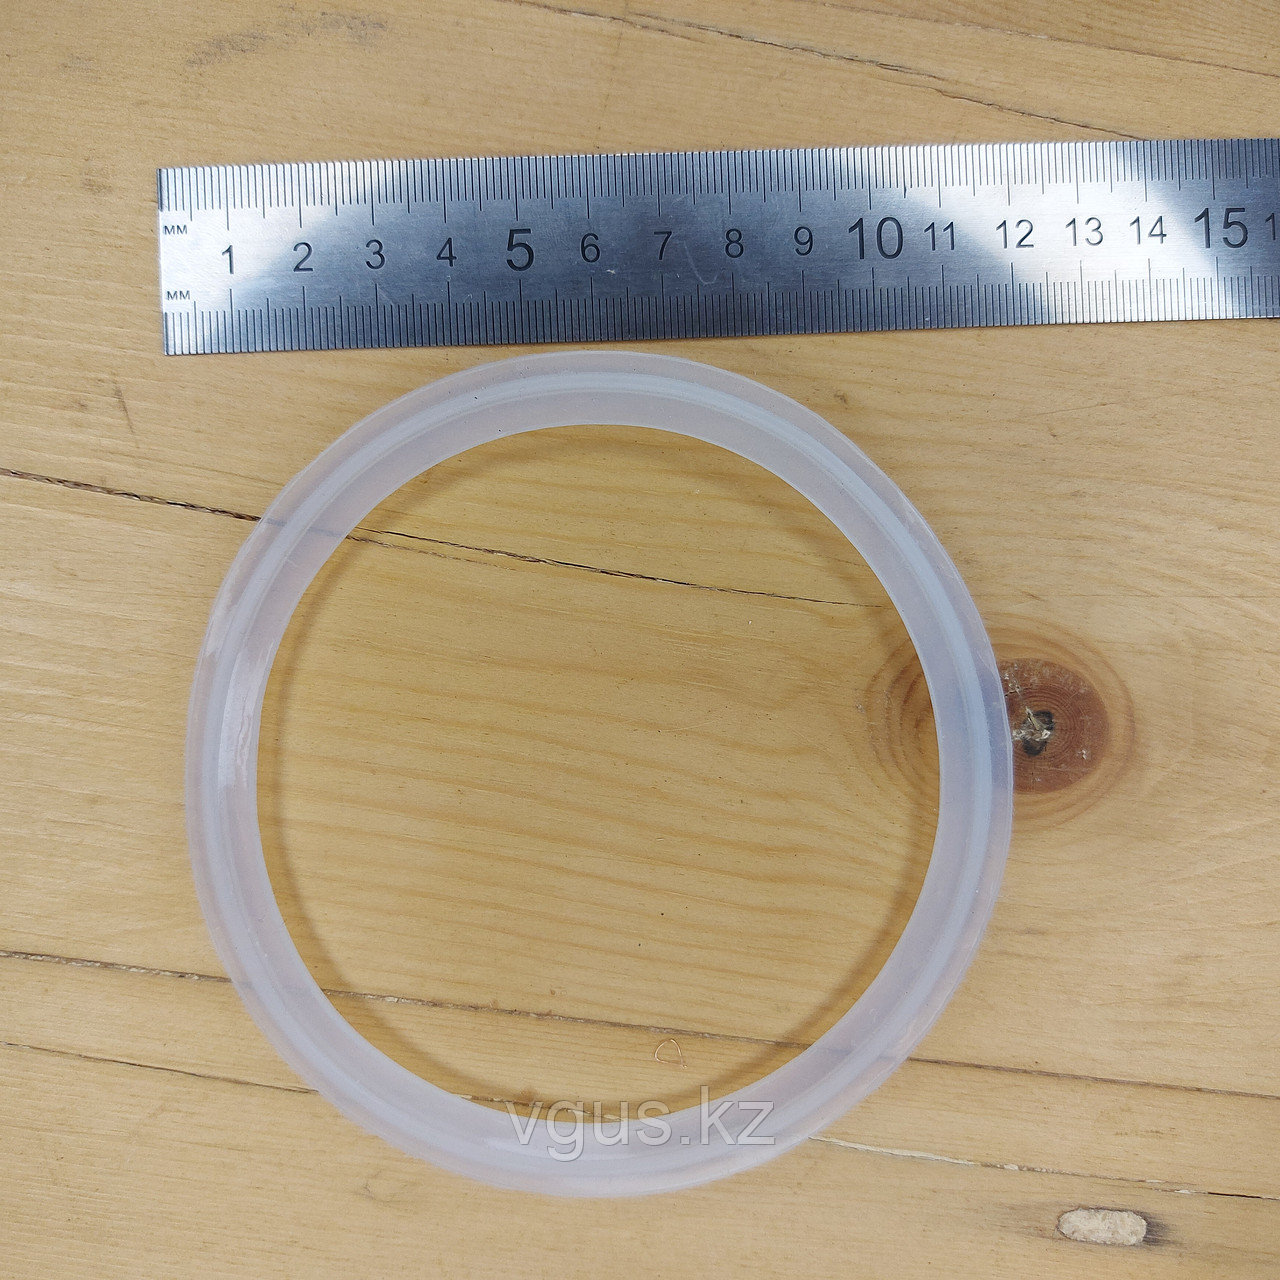 Силиконовая прокладка для герметизации кламповых соединений 4.0 дюйма